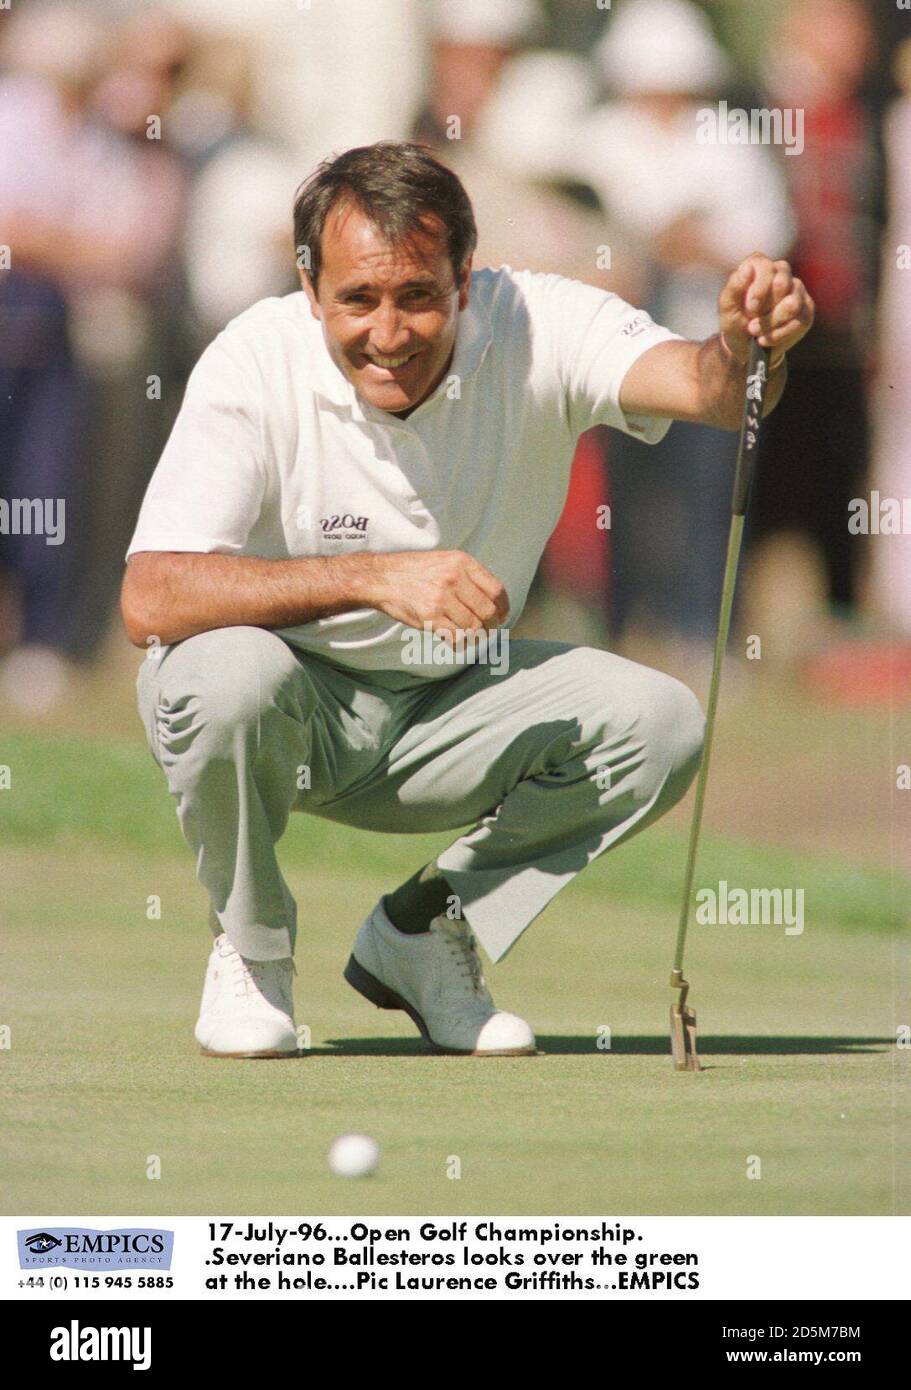 17-Julio-96. Open Golf Championship. Severiano Ballesteros mira sobre el verde en el agujero Foto de stock